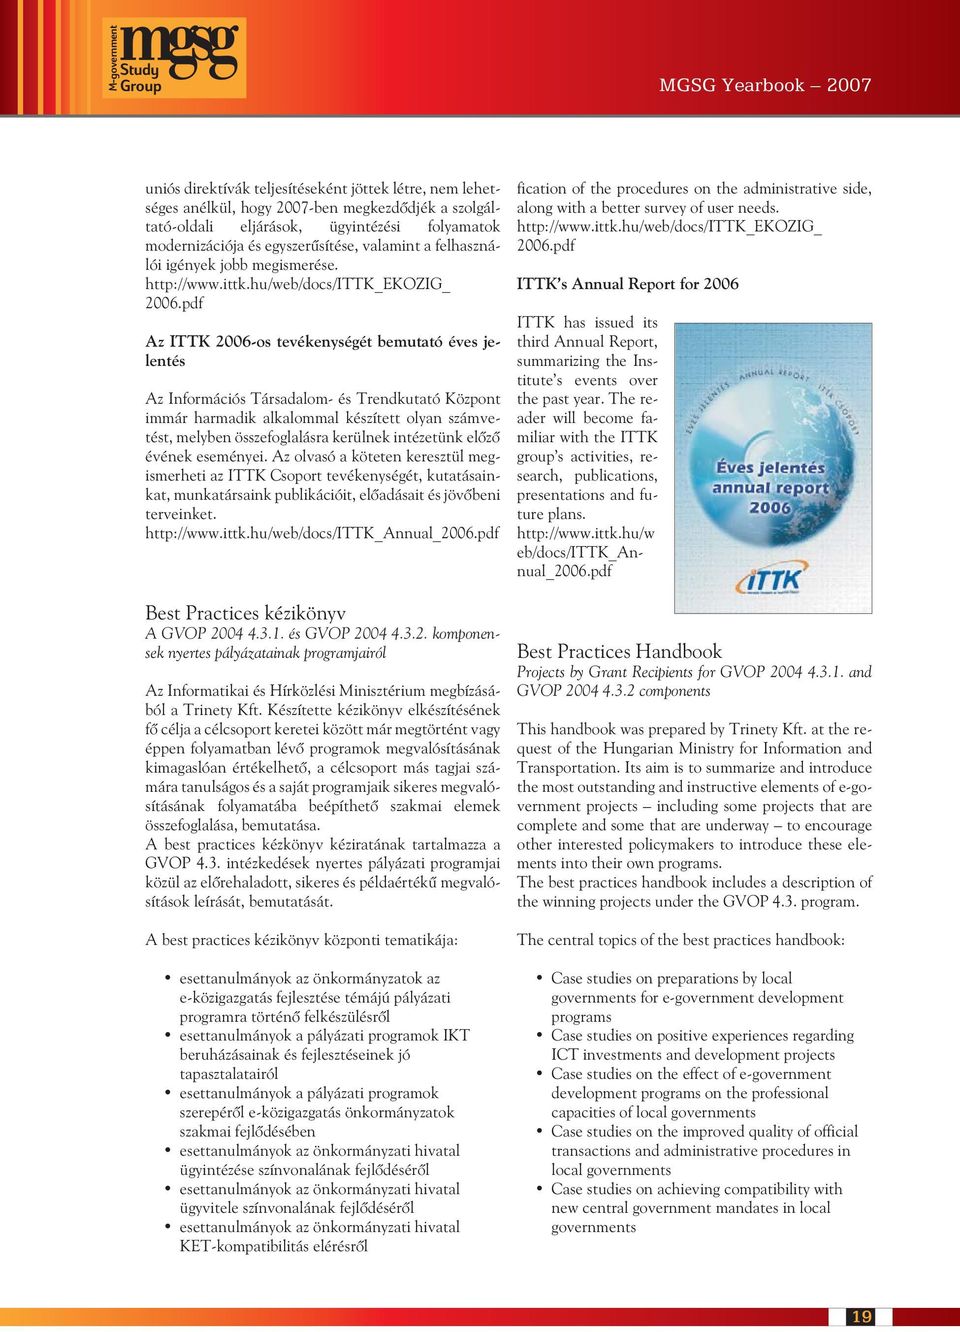 pdf Az ITTK 2006-os tevékenységét bemutató éves jelentés Az Információs Társadalom- és Trendkutató Központ immár harmadik alkalommal készített olyan számvetést, melyben összefoglalásra kerülnek